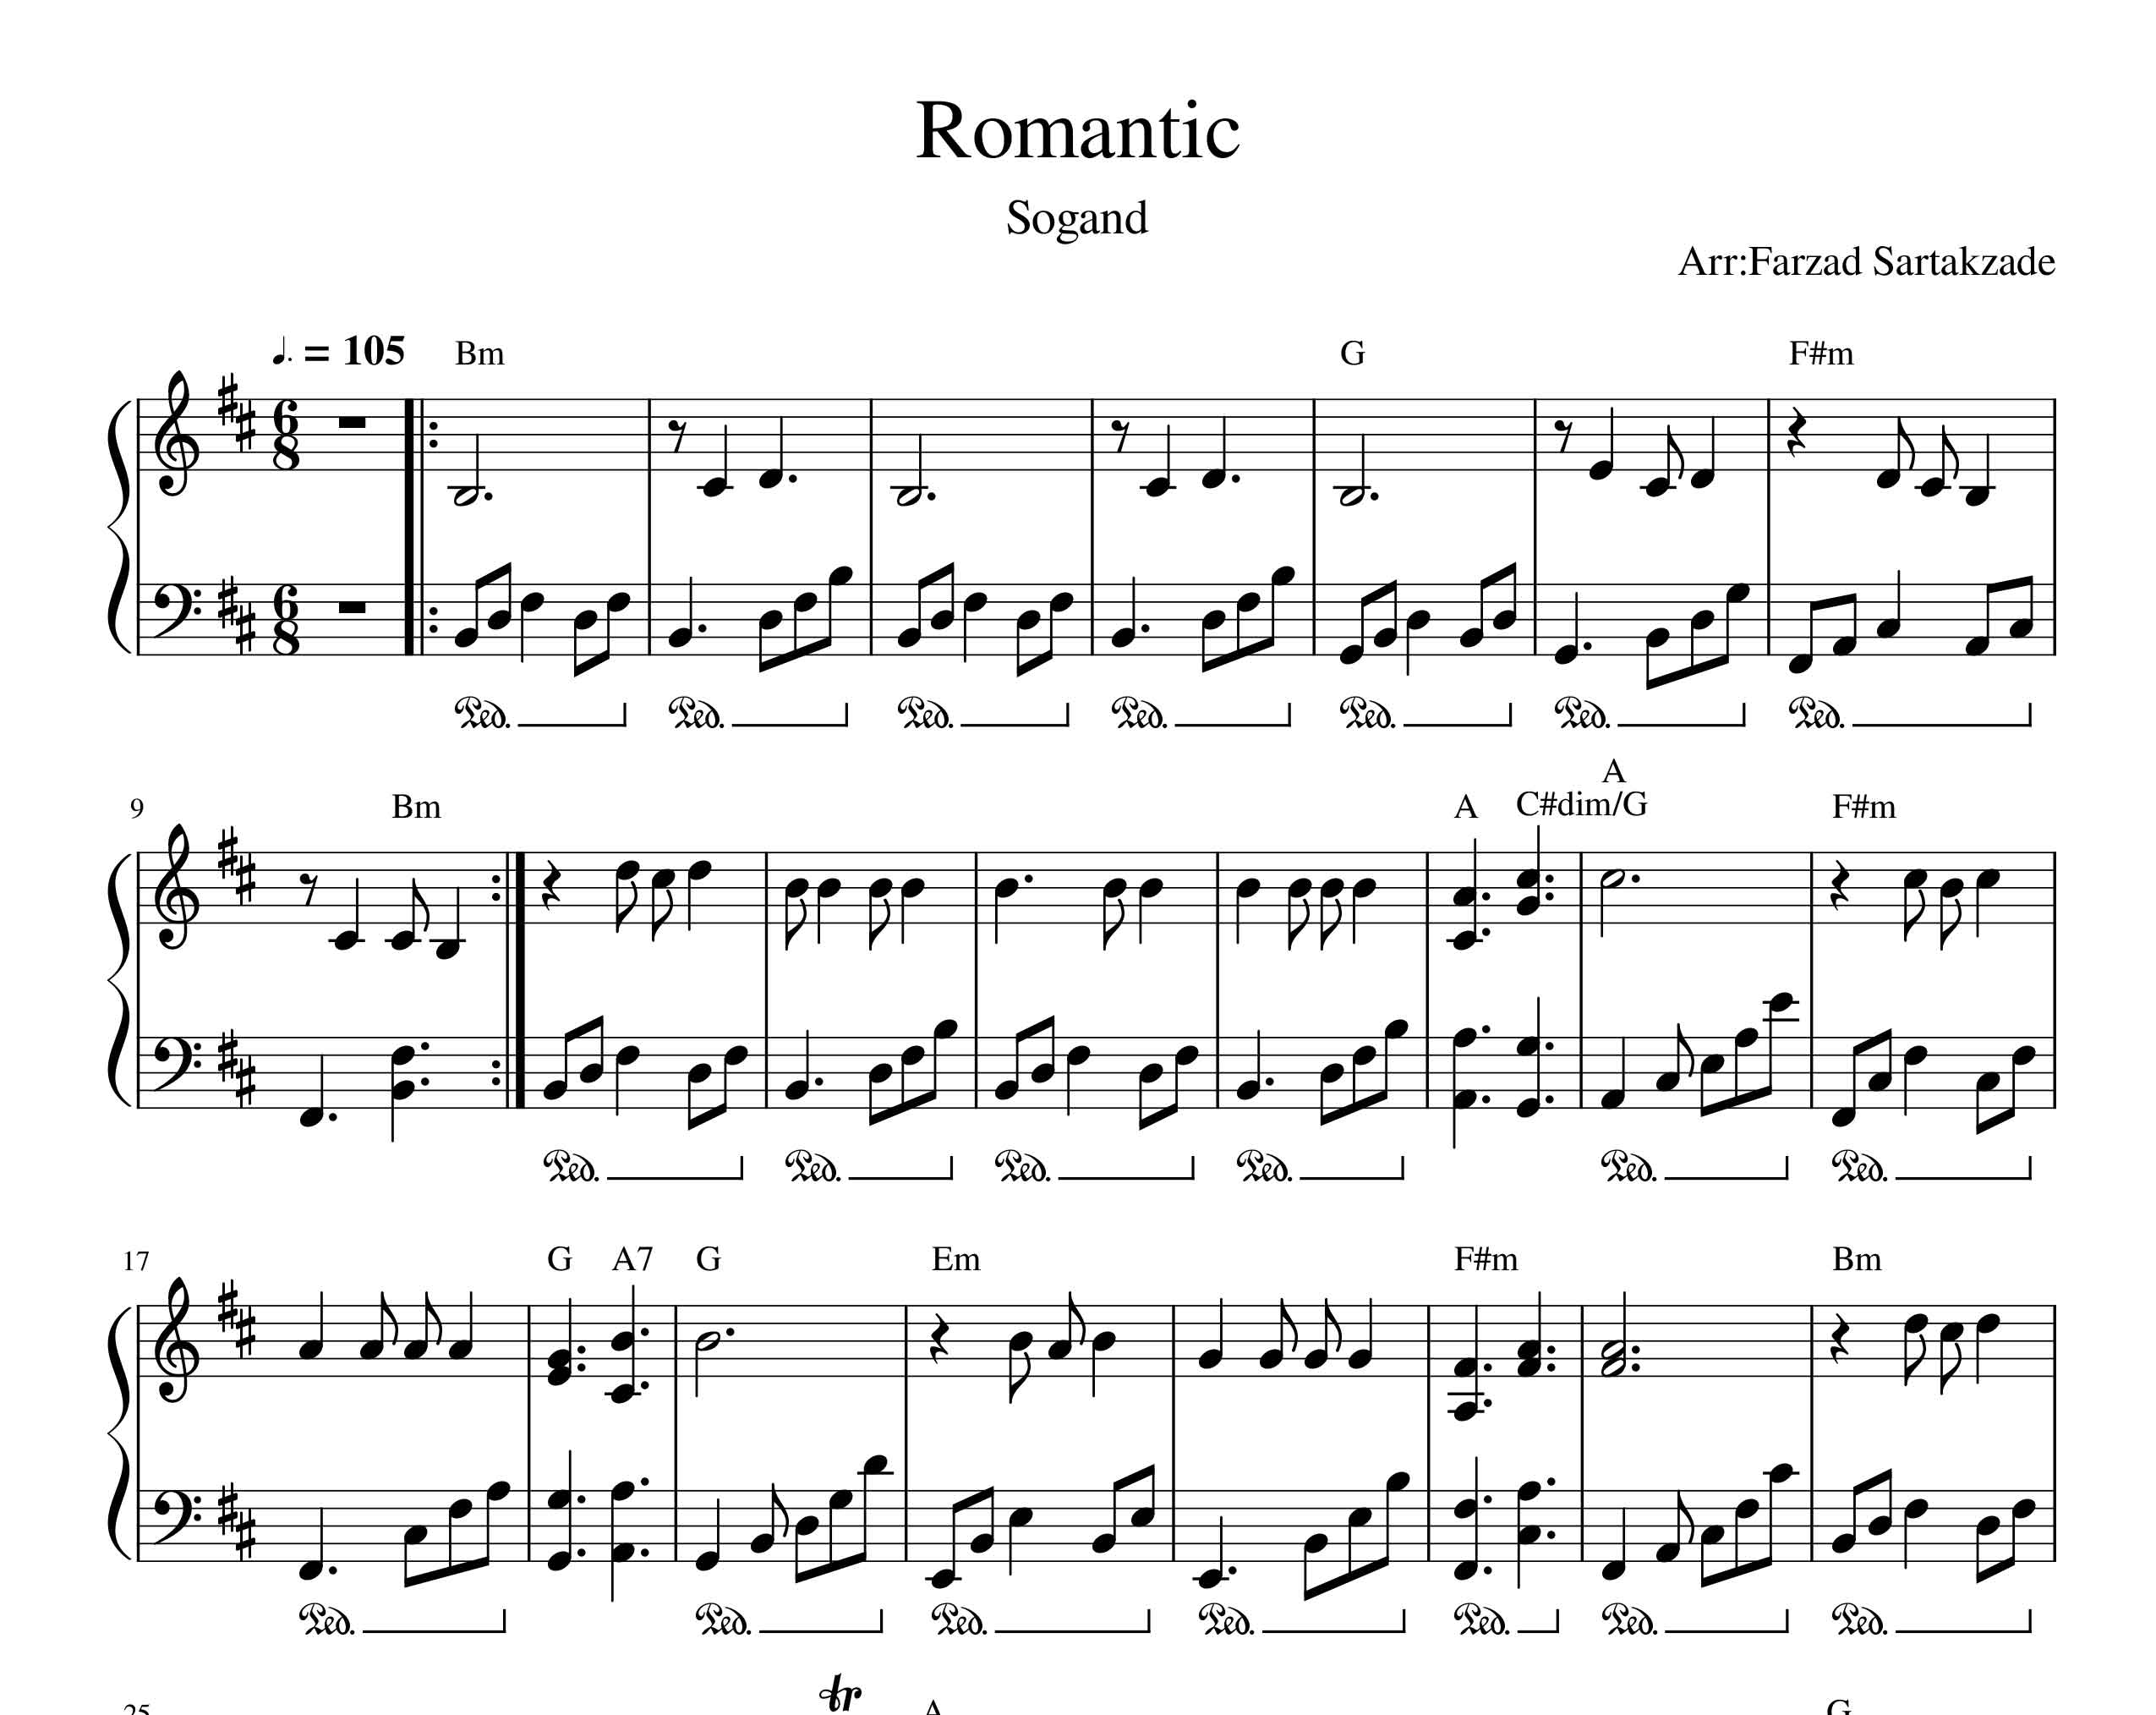 نت پیانو رومانتیک از سوگند به همراه آکورد